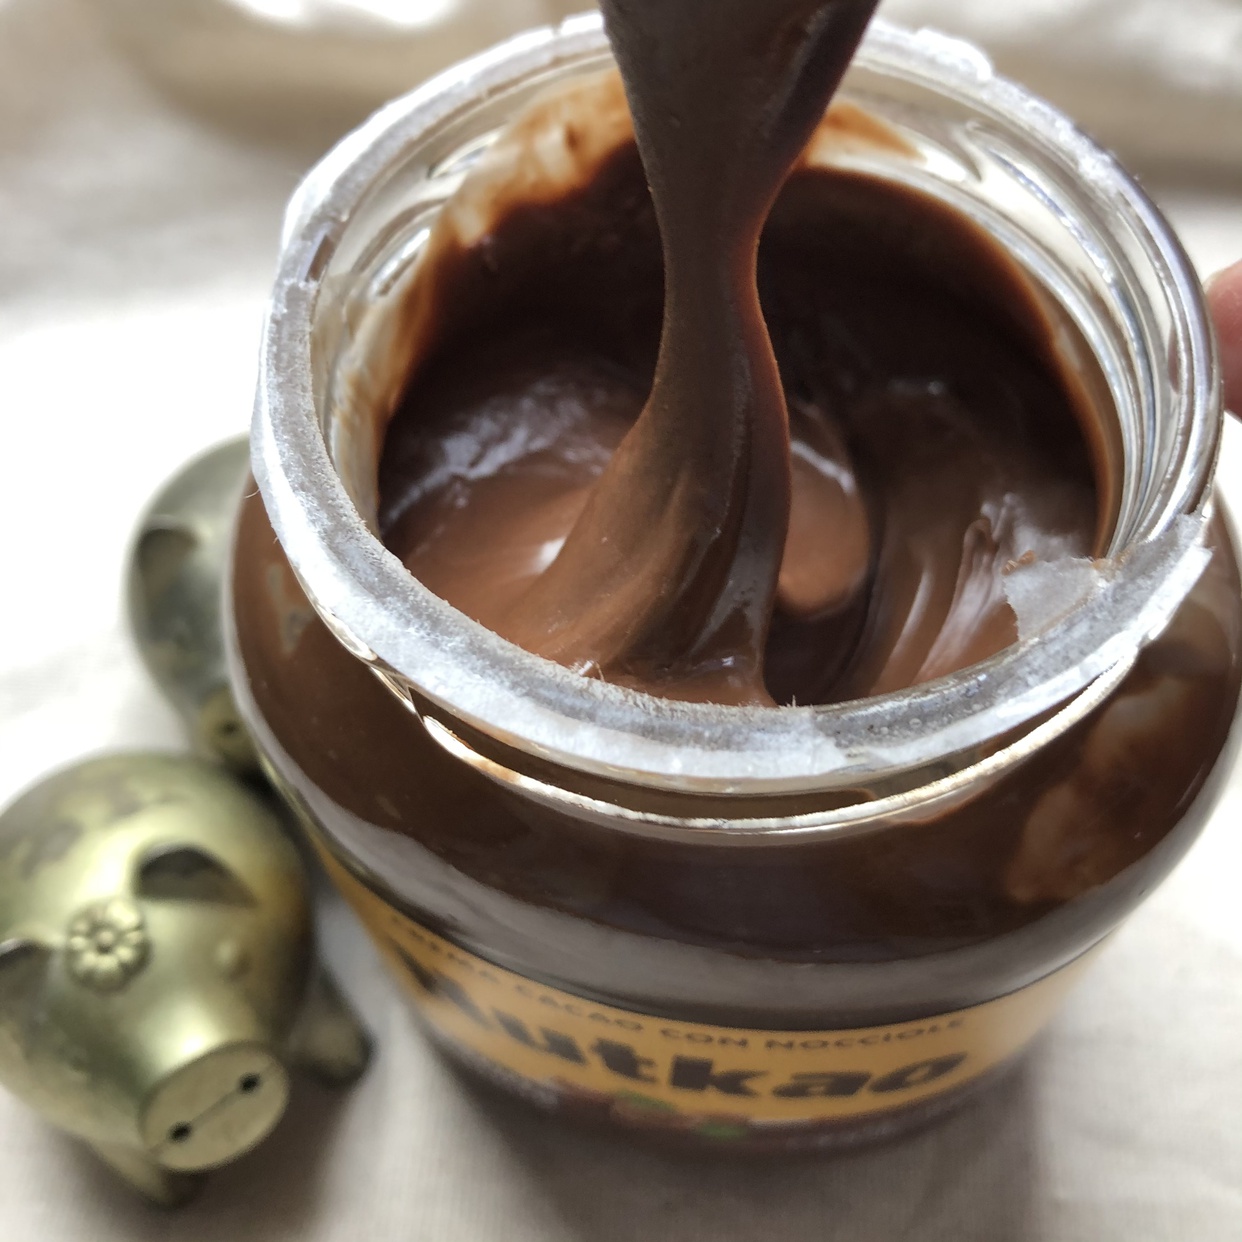 Nutkao(ヌットカオ) ヘーゼルナッツ チョコクリームの良い点・メリットに関する國唯ひろみさんの口コミ画像2